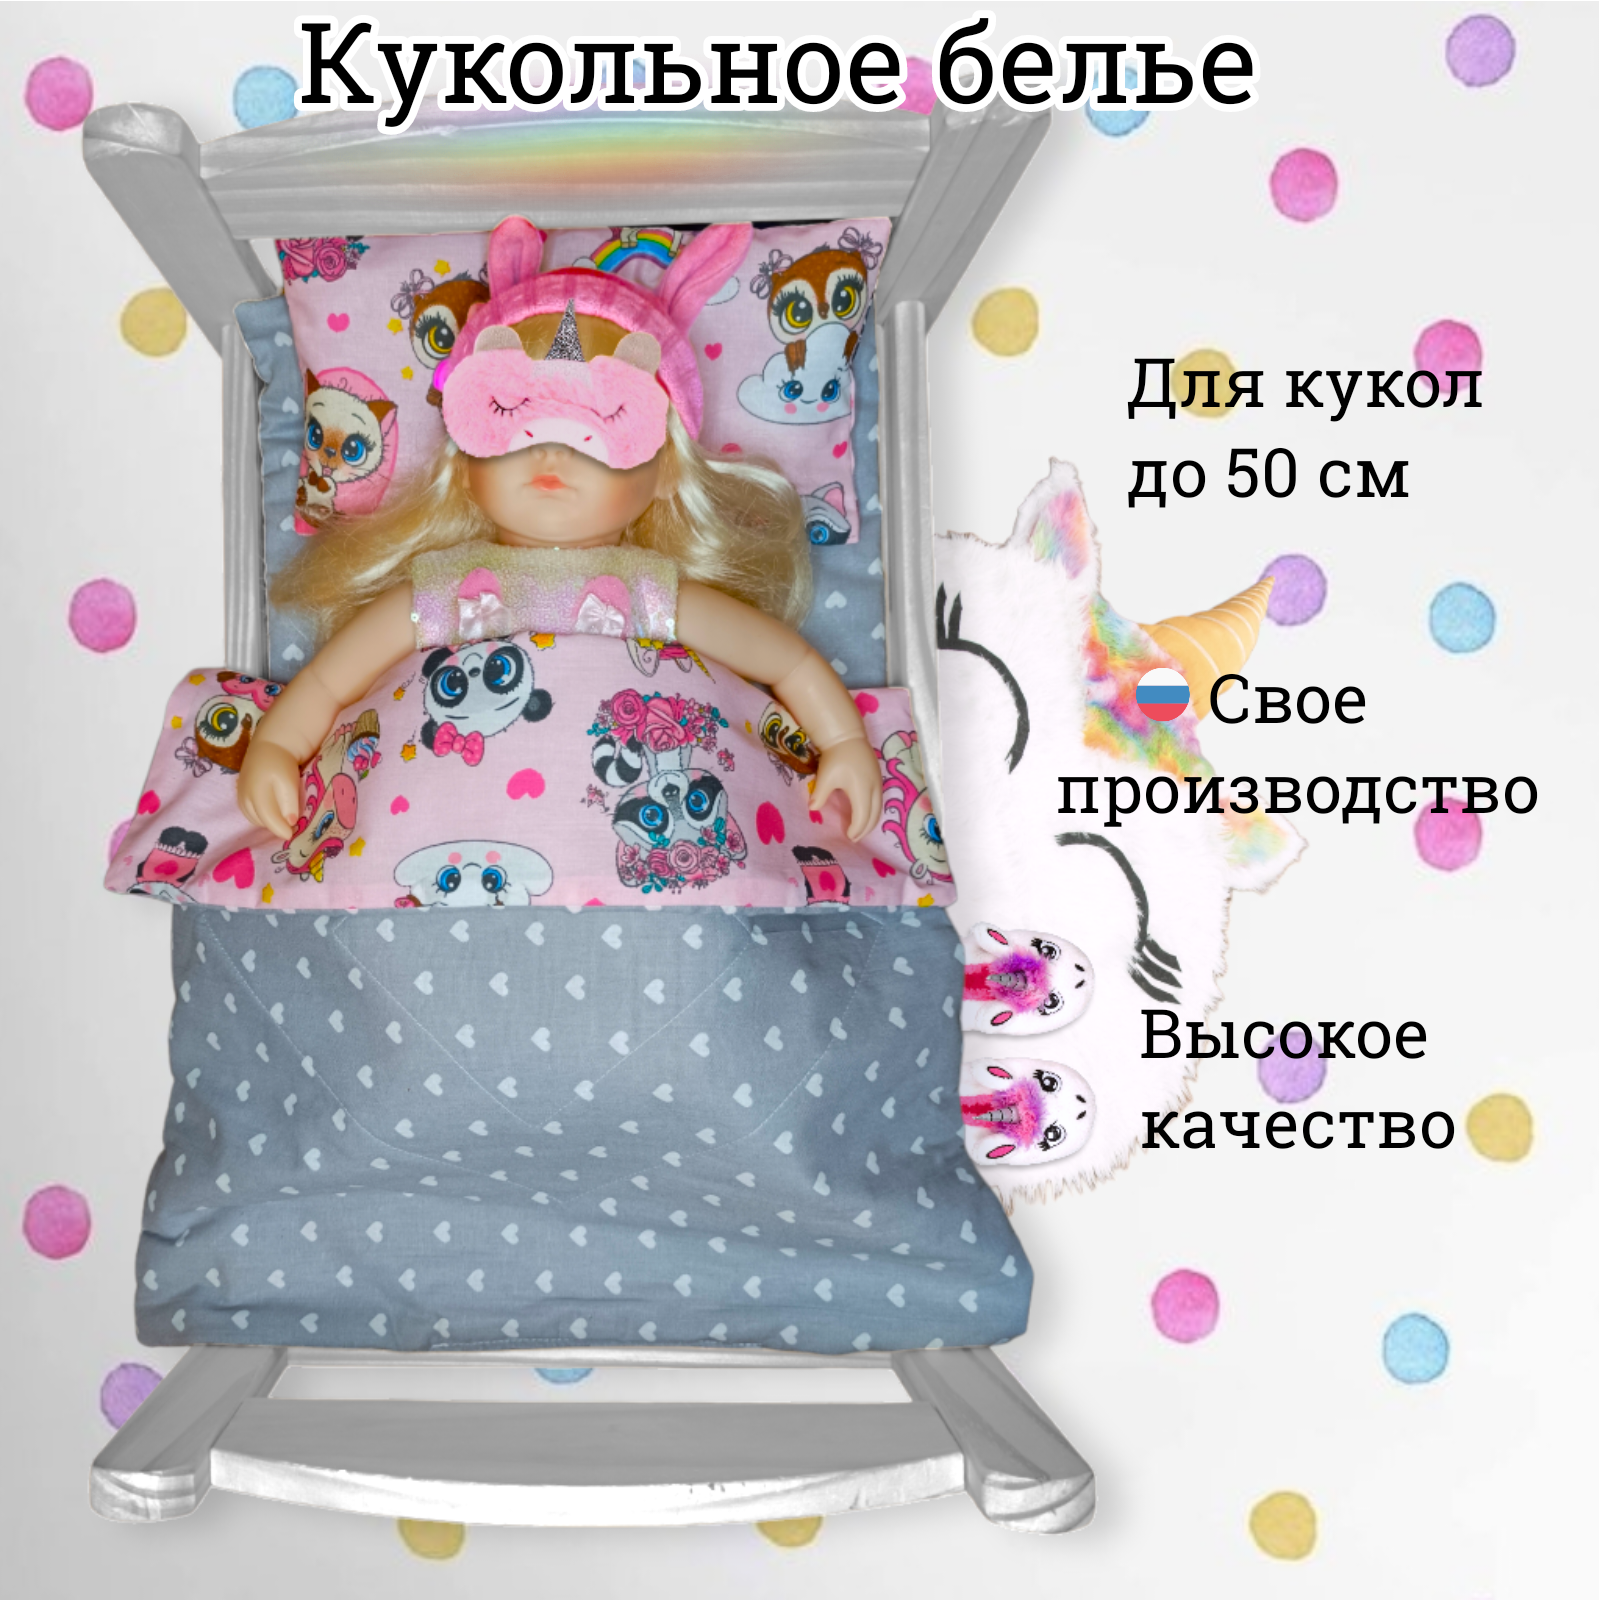 Комплект для большой куклы до 50 см Lili Dreams: одеяло, подушка, матрас Аксессуары для кукол Мечта